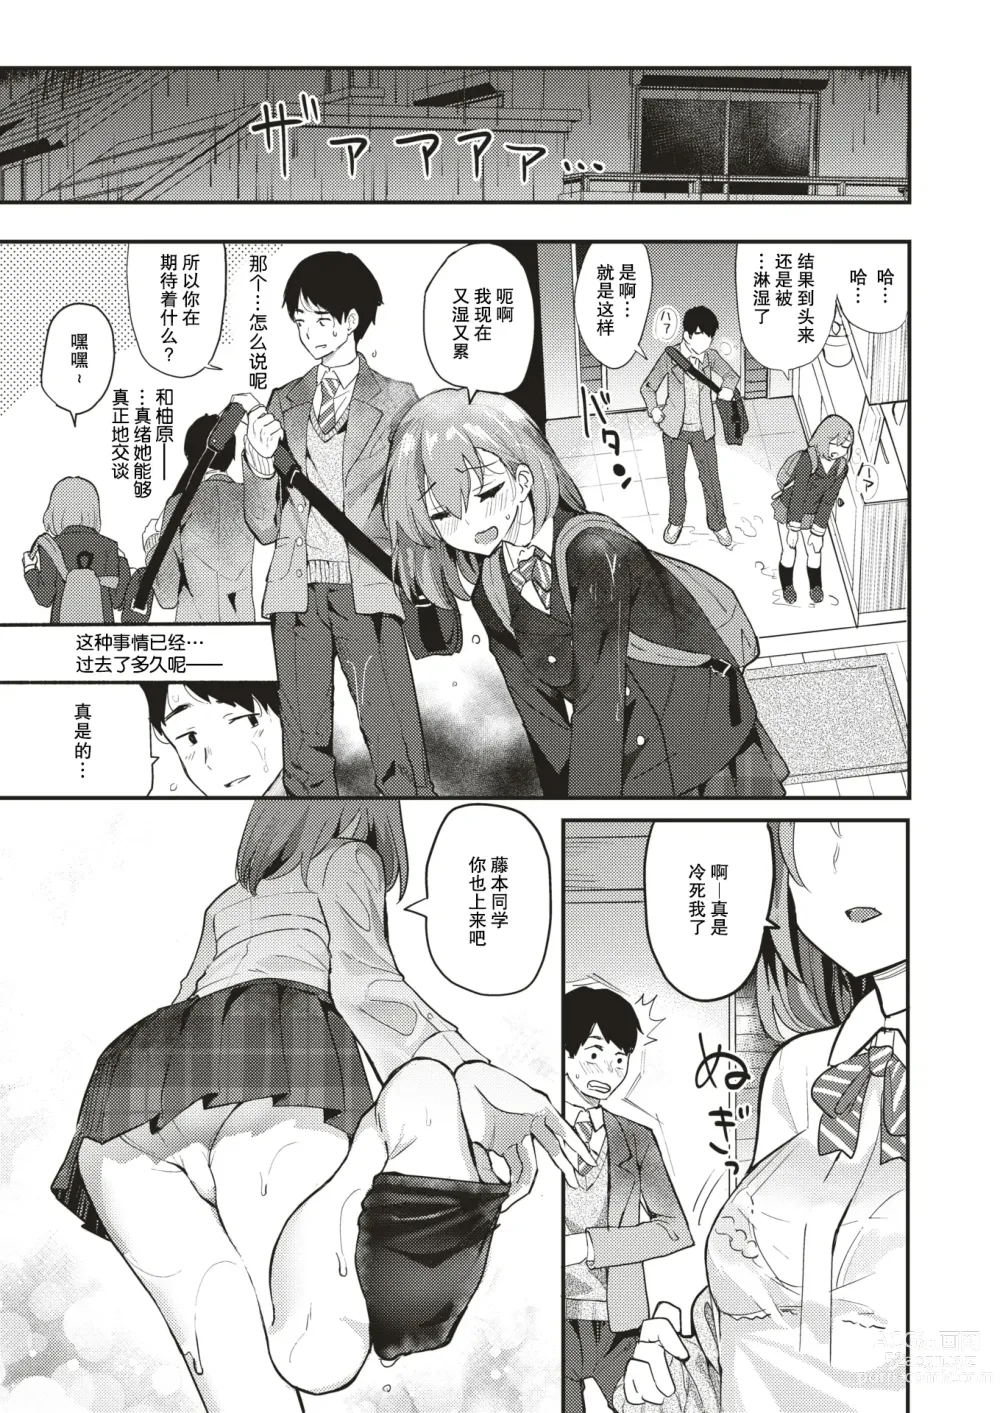 Page 6 of manga 下雨了